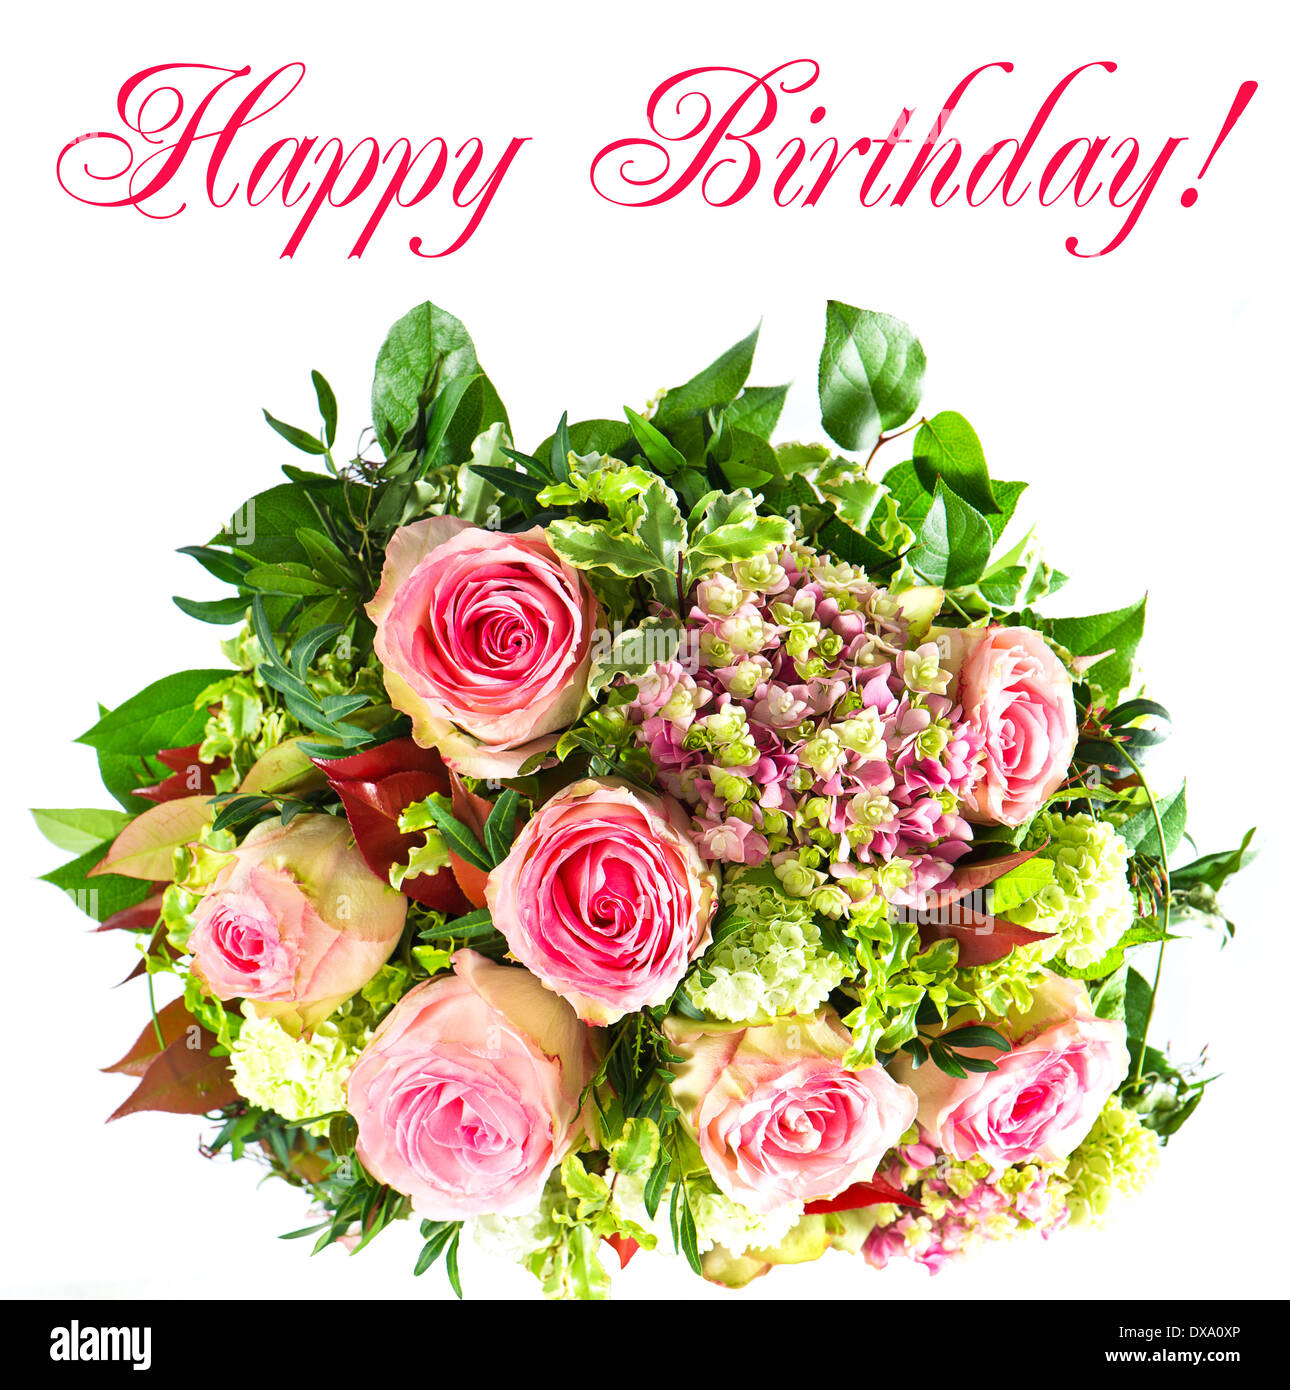 Bouquet de fleurs colorées. joyeux anniversaire ! Photo Stock - Alamy